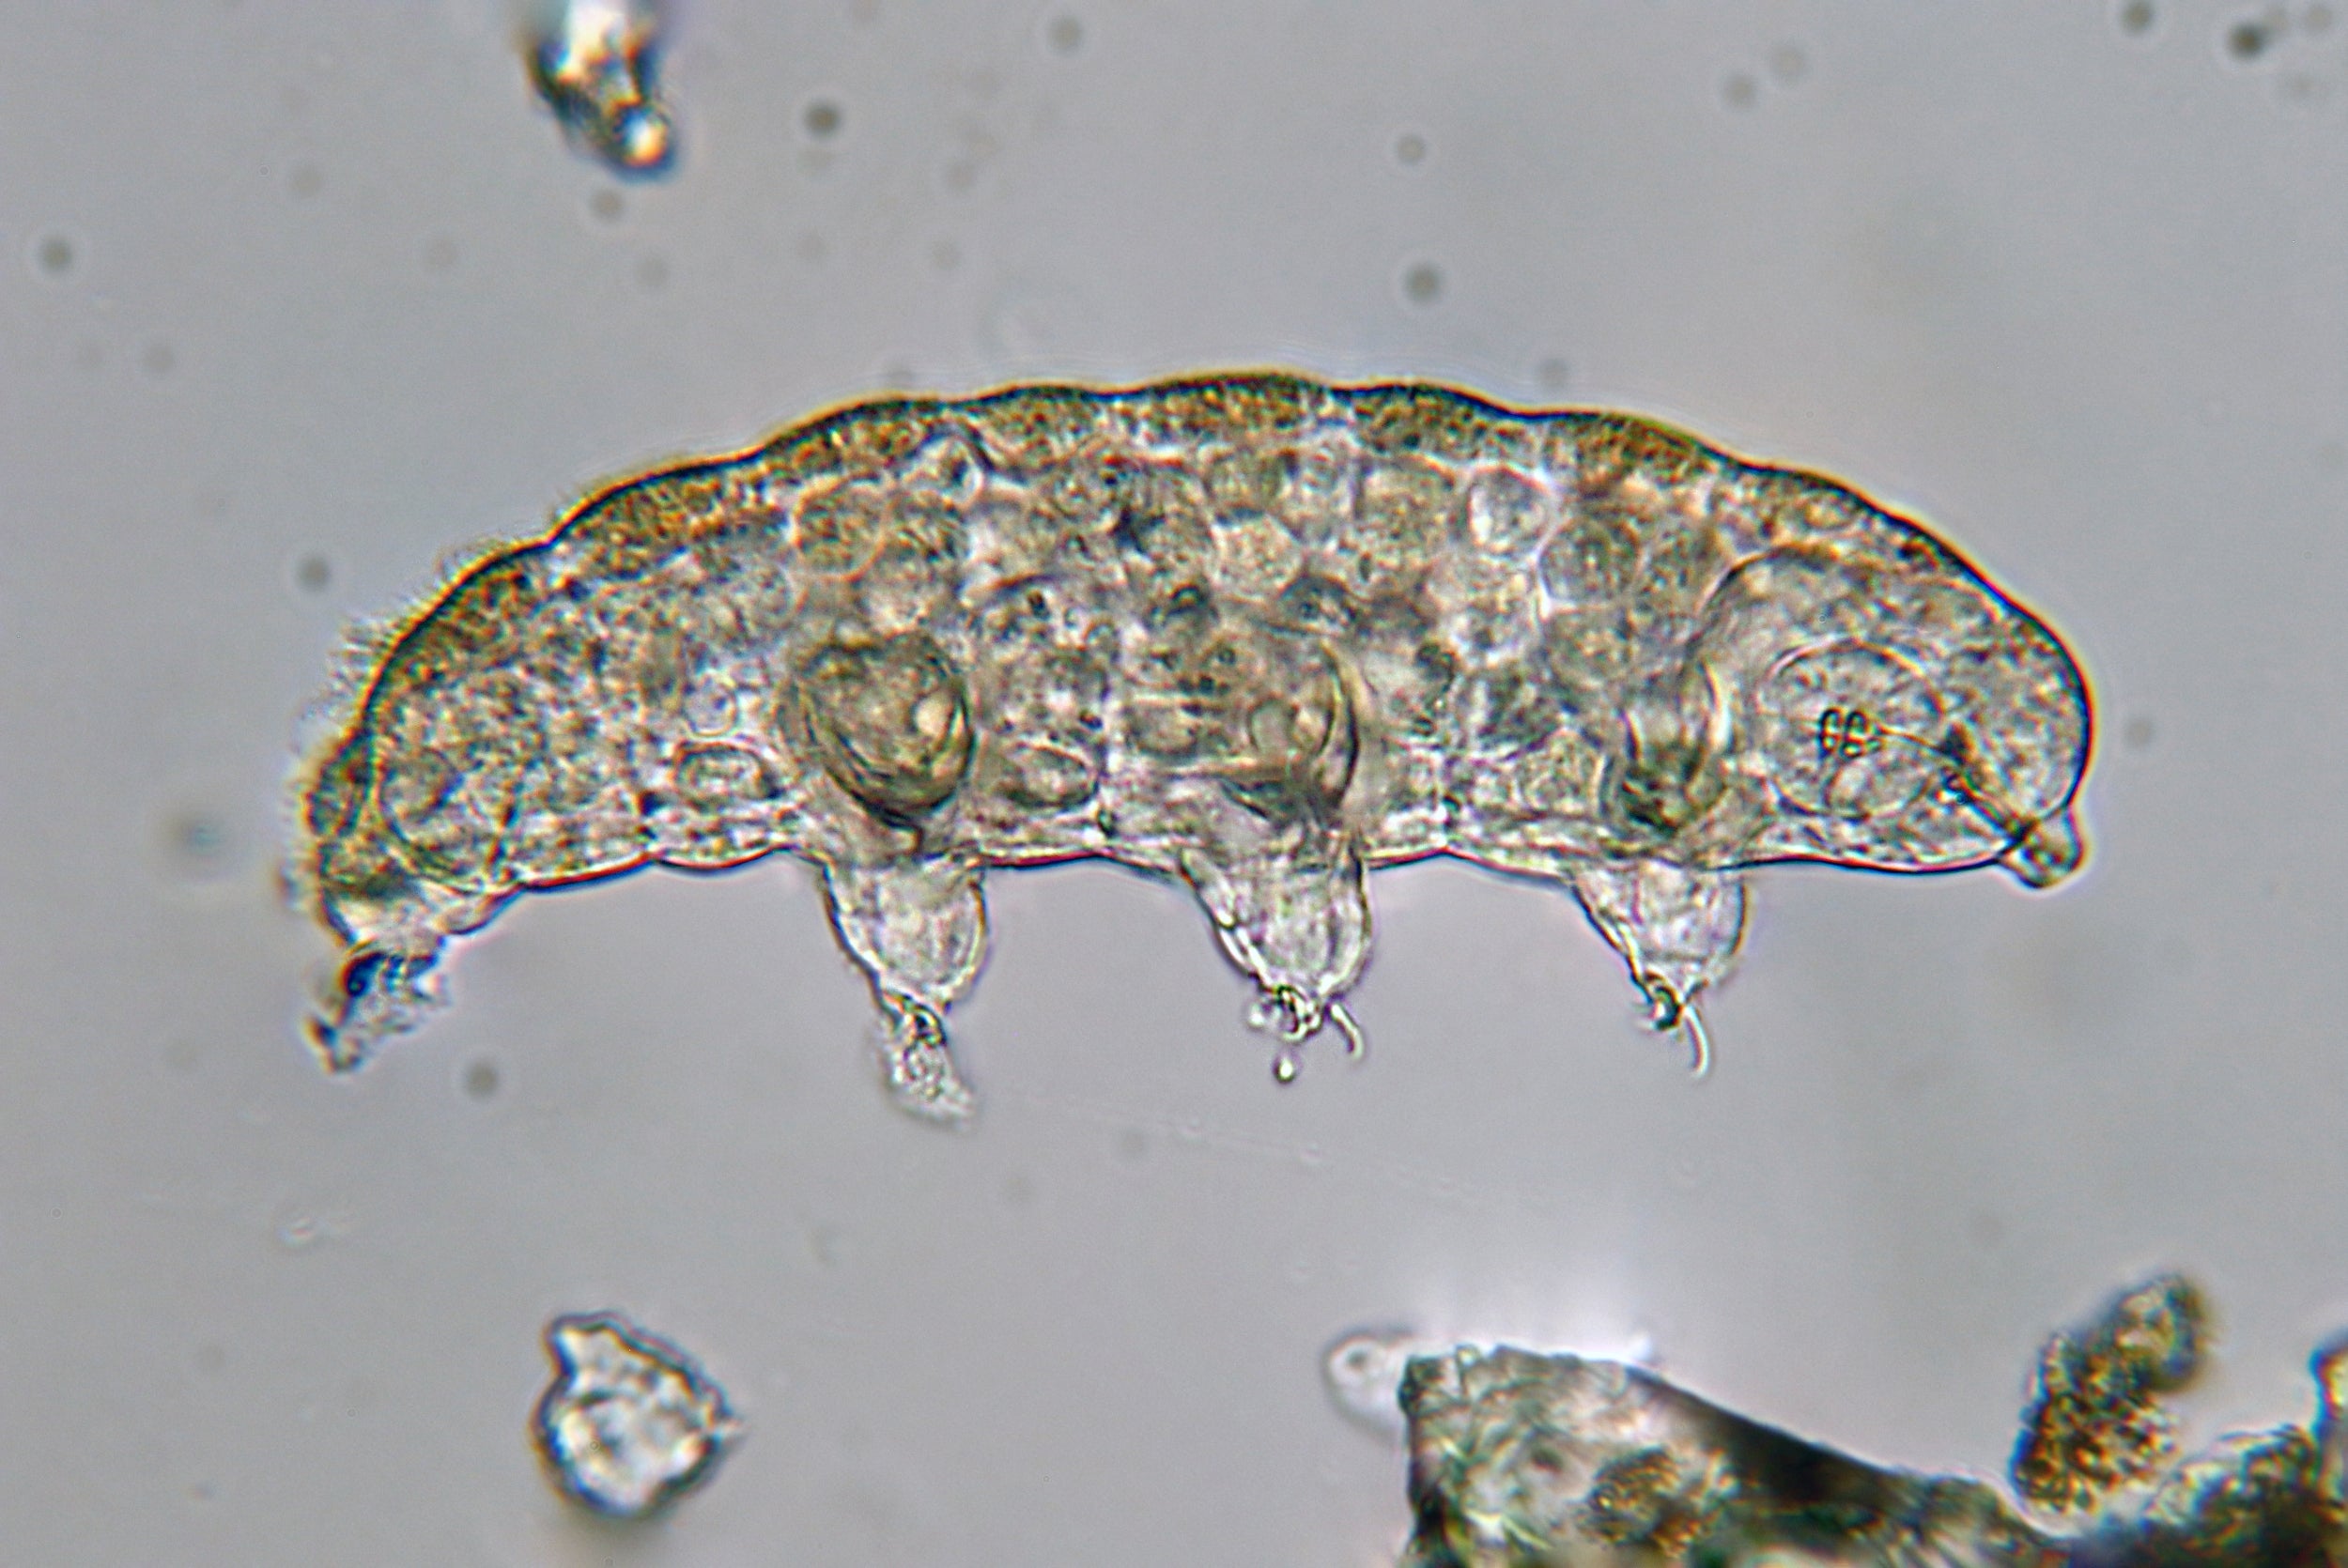 A tardigrade as seen through a microscope.  (Image: Philippe Garcelon)